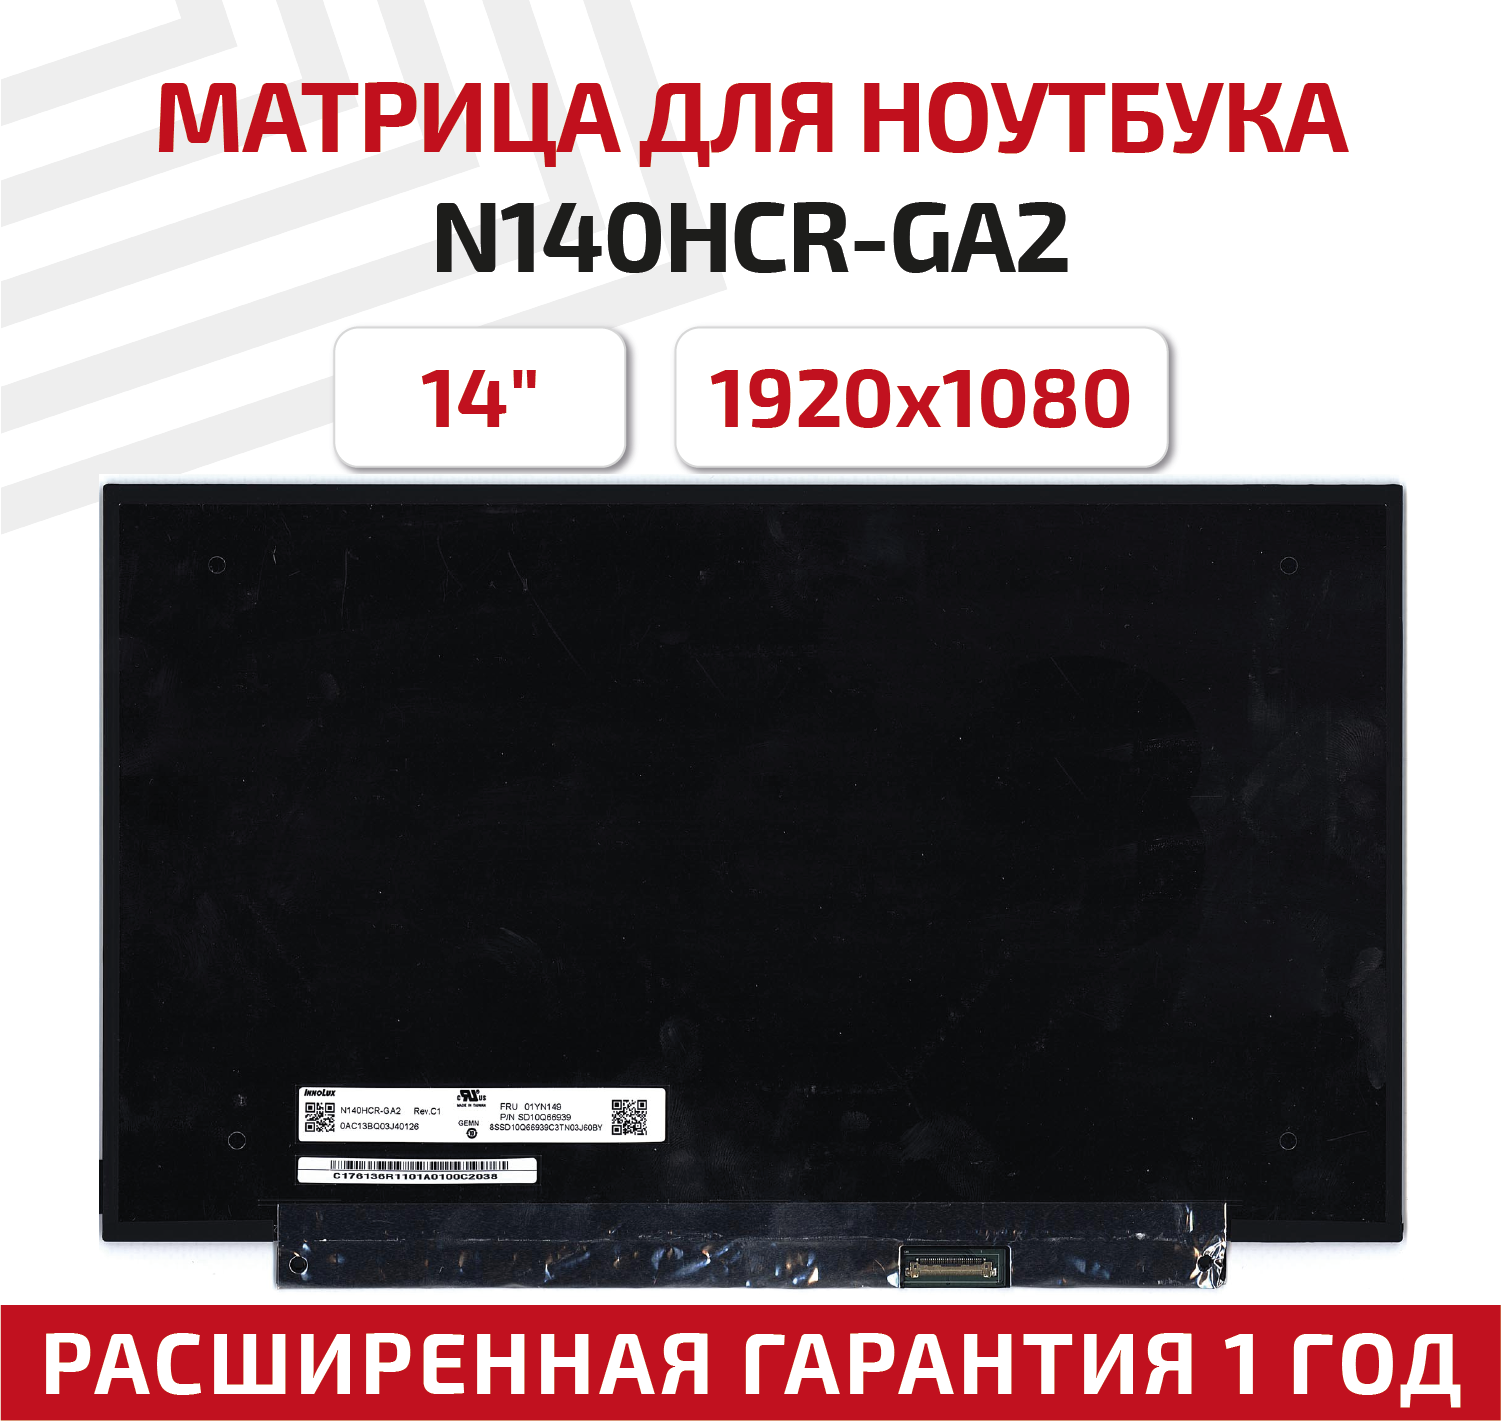 Матрица (экран) для ноутбука N140HCR-GA2, 14", 1920x1080, 30-pin, светодиодная (LED), матовая